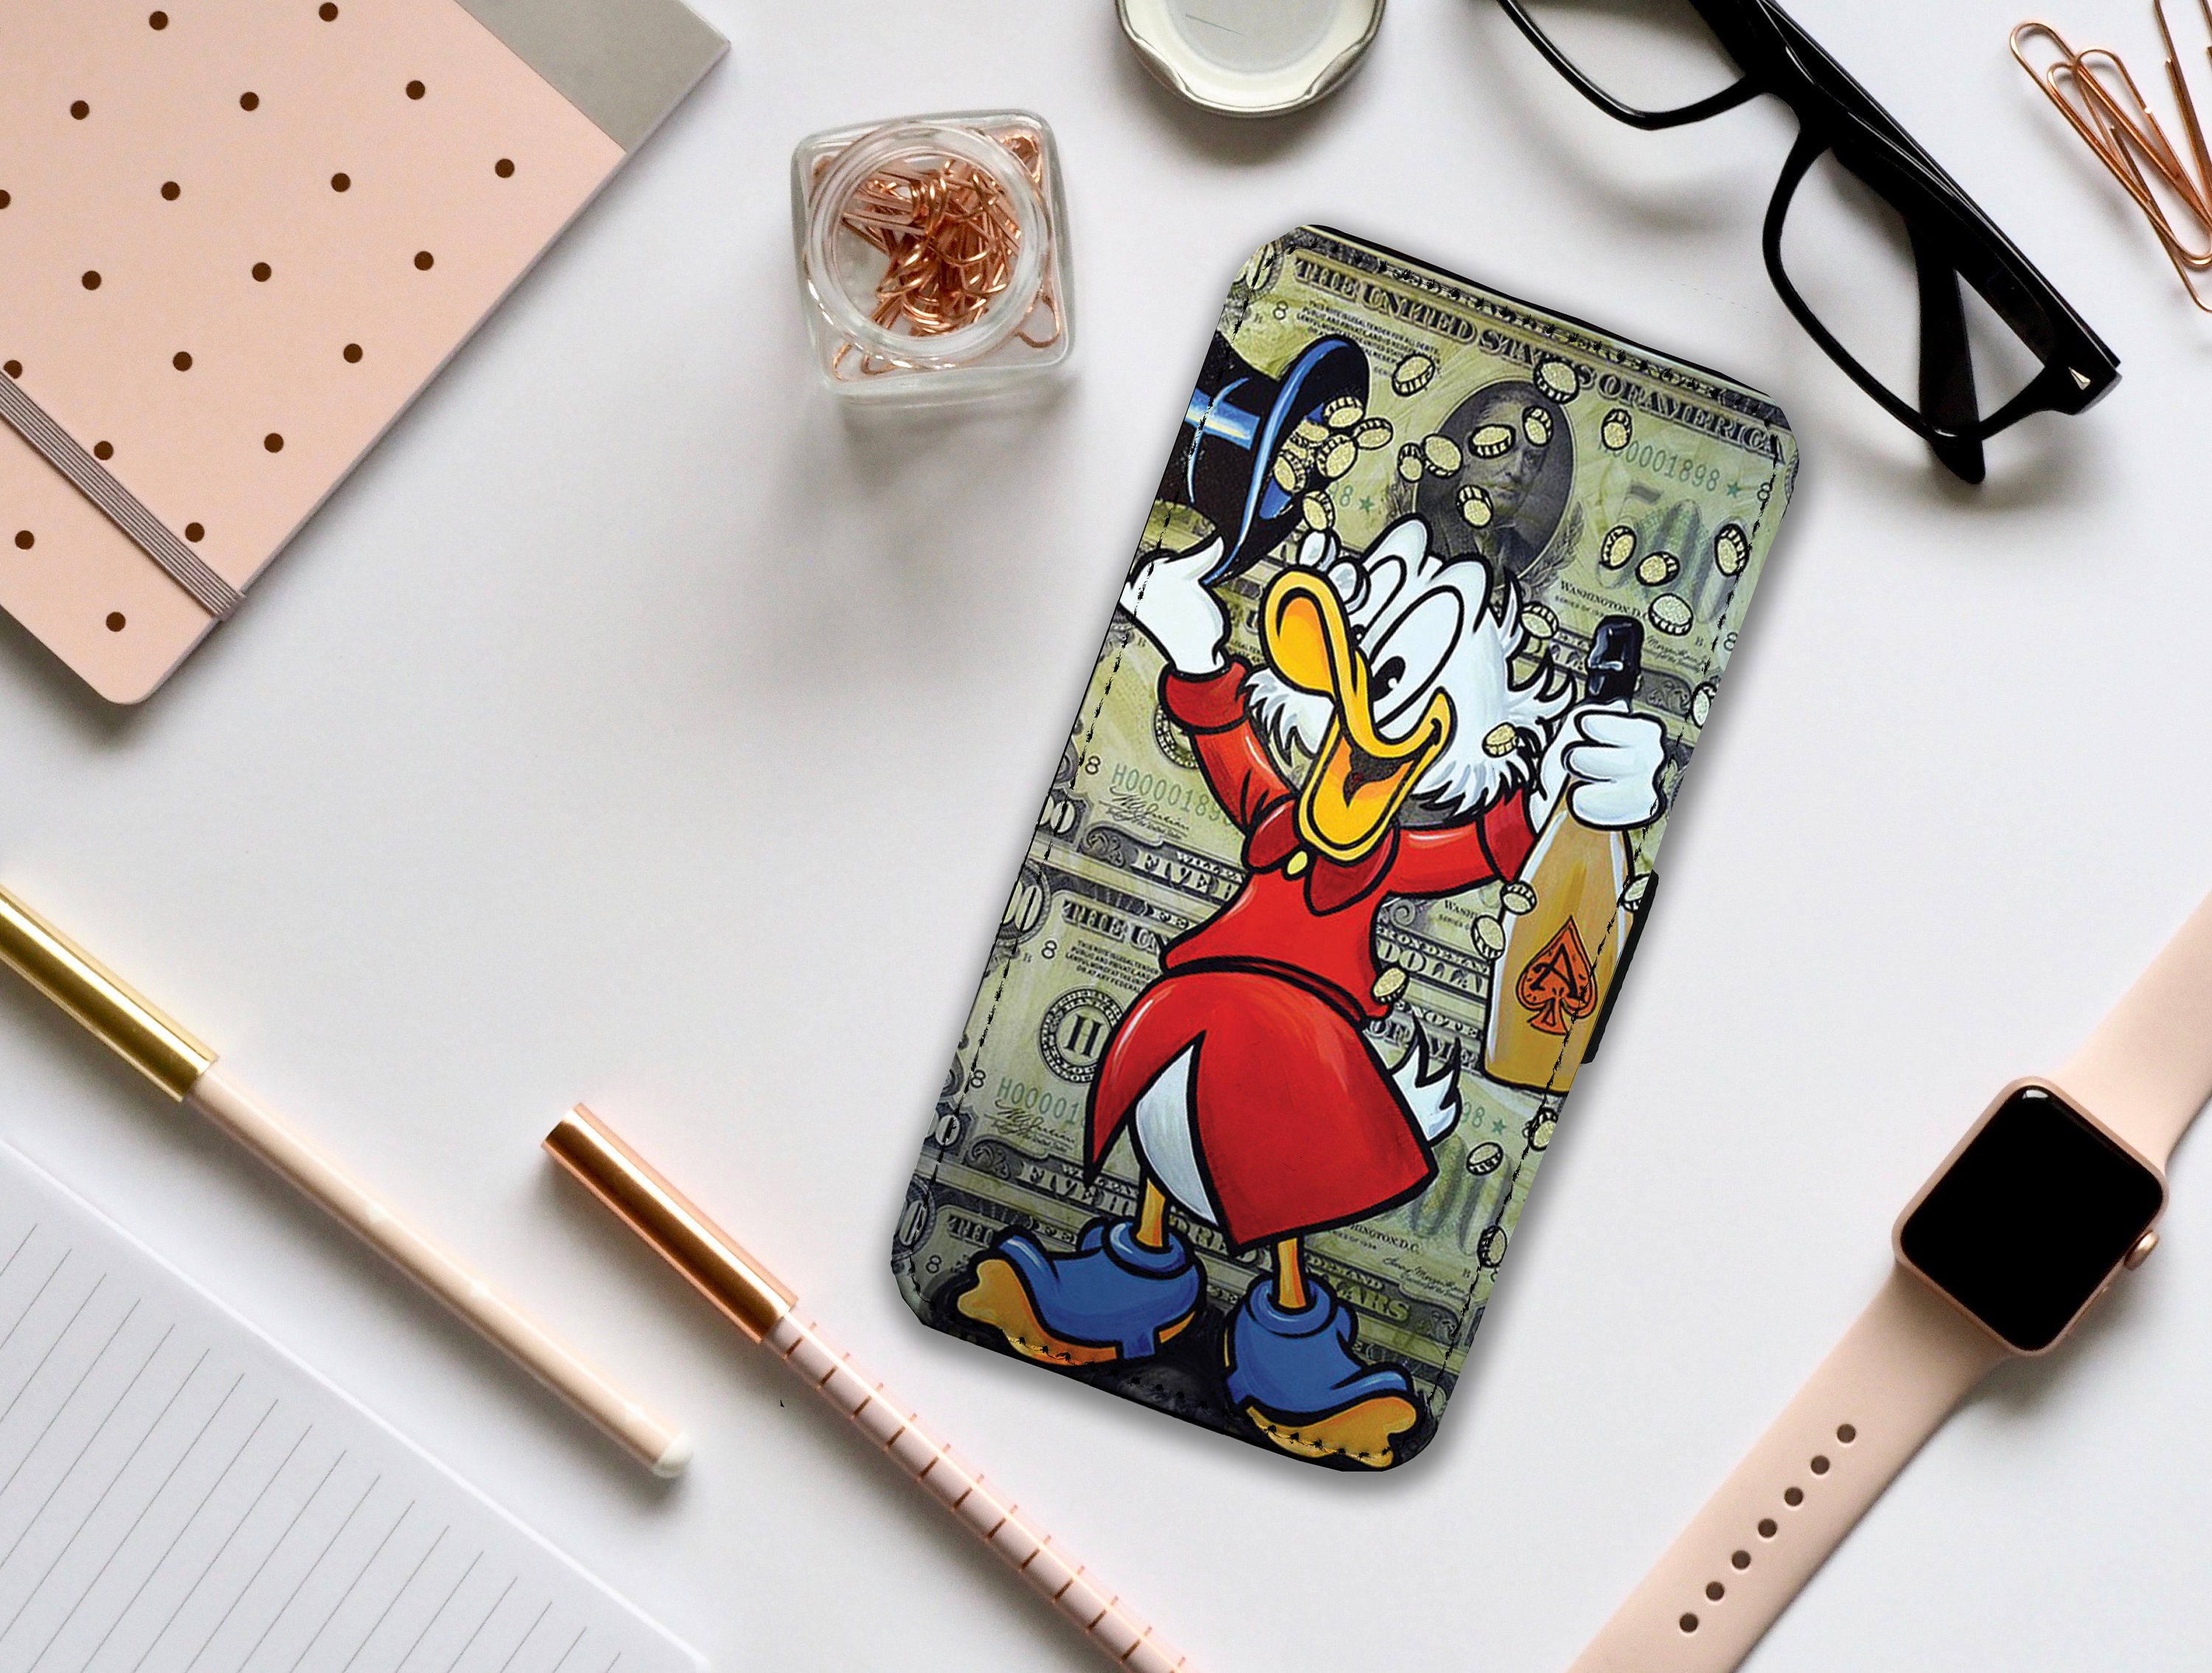 Disney x Gucci Donald Duck pencil set